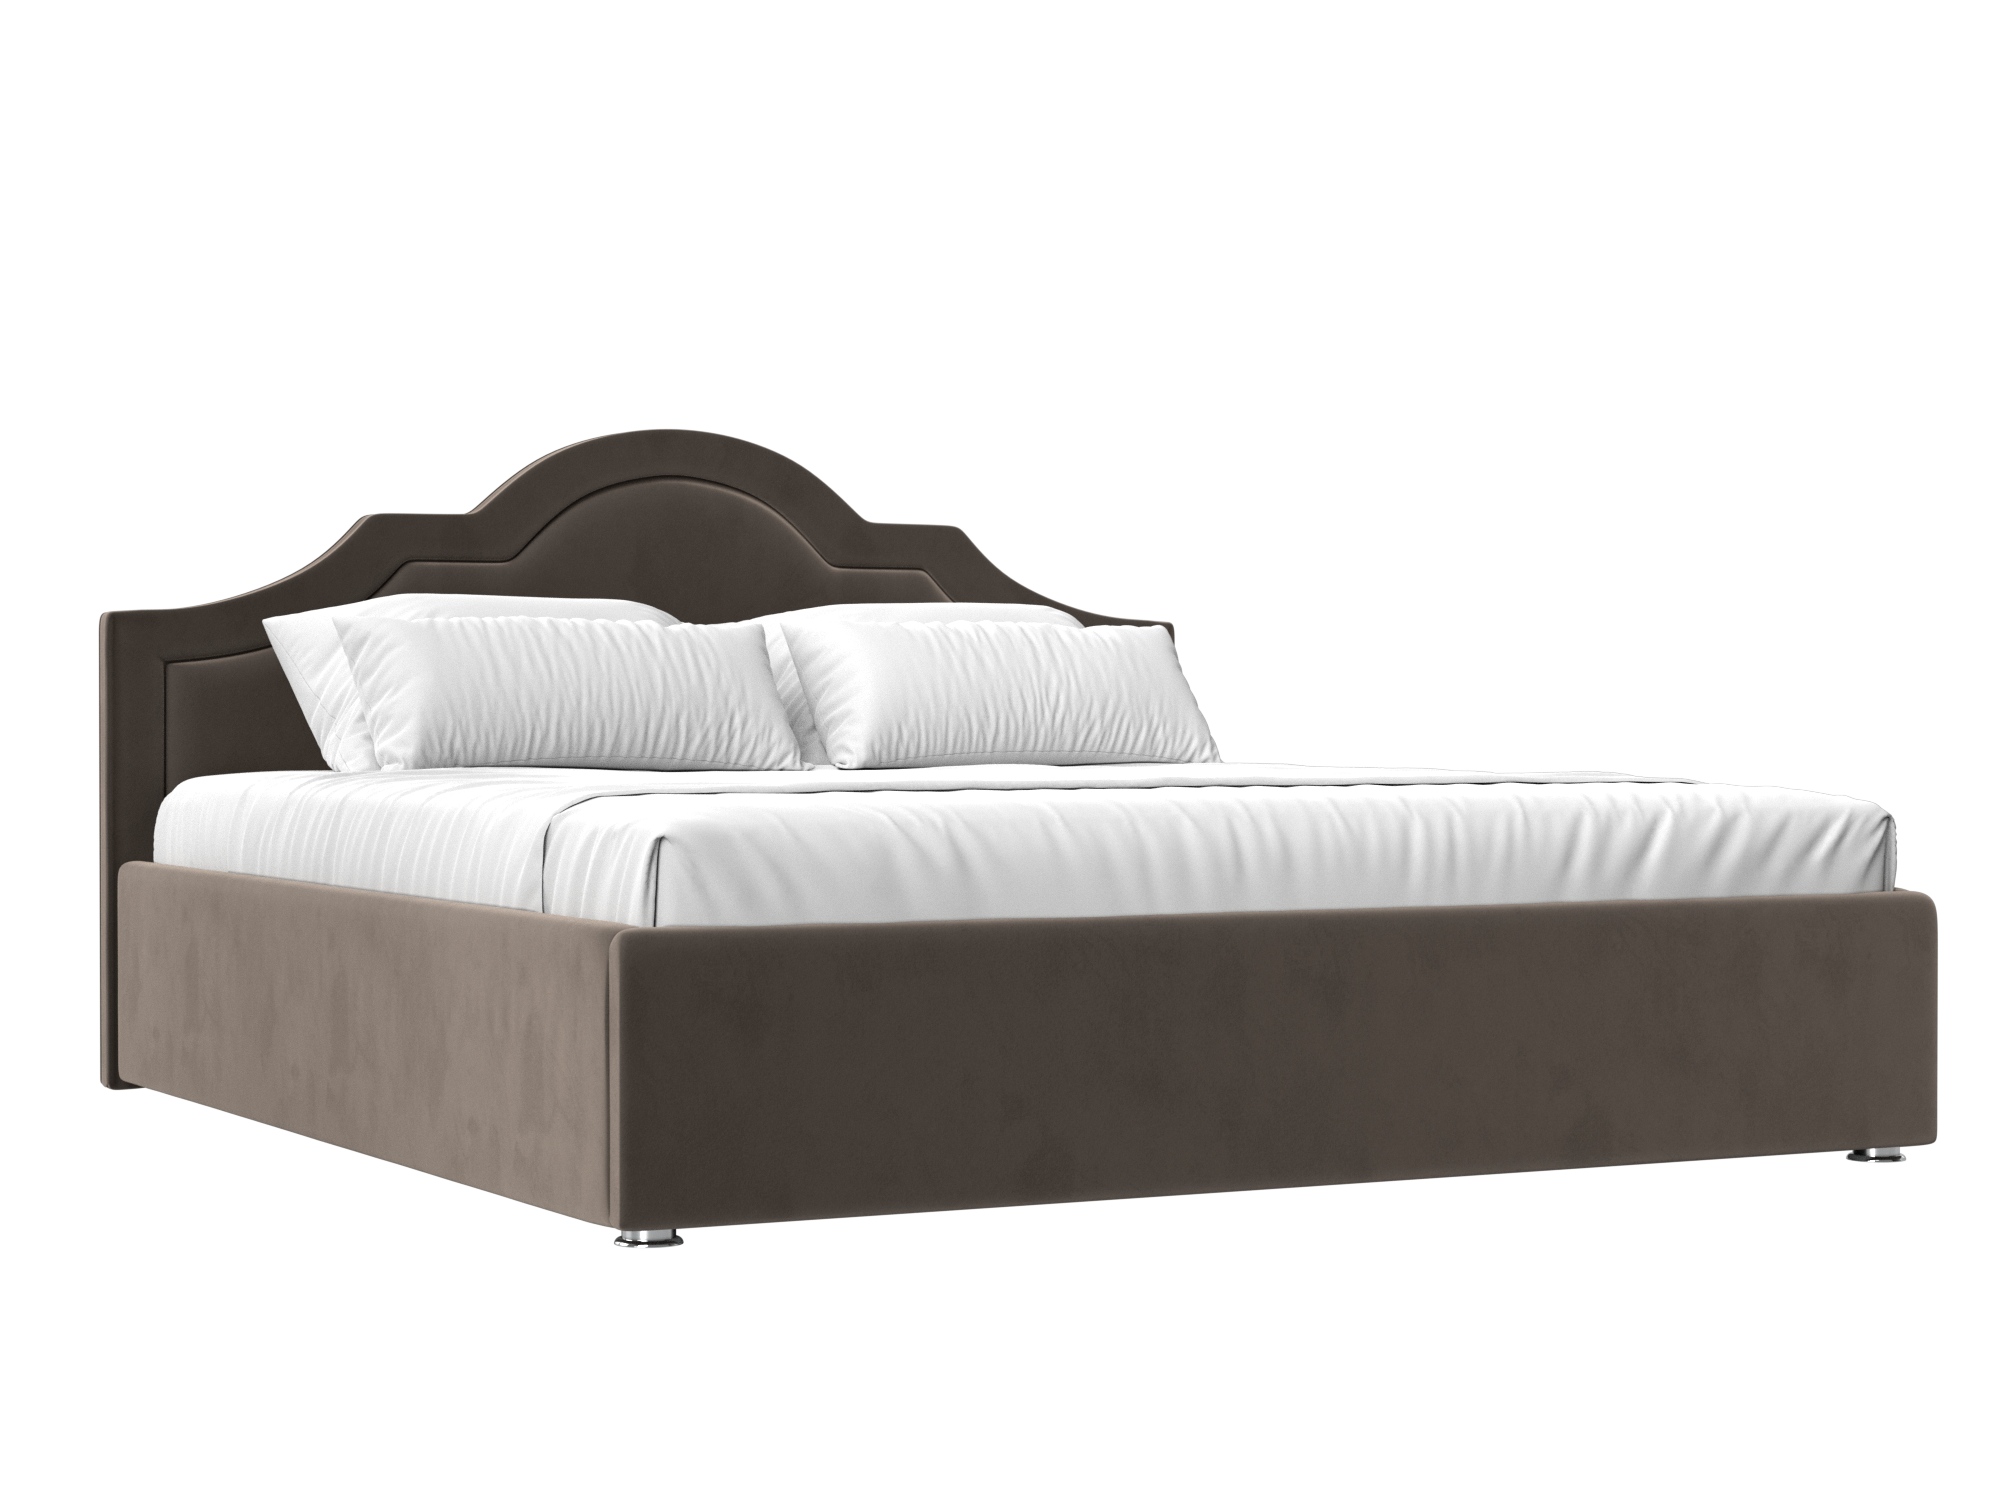 Кровать Афина (160х200) Коричневый, ЛДСП афина кровать 160х200 белый глянец коричневый темный белый мдф лдсп